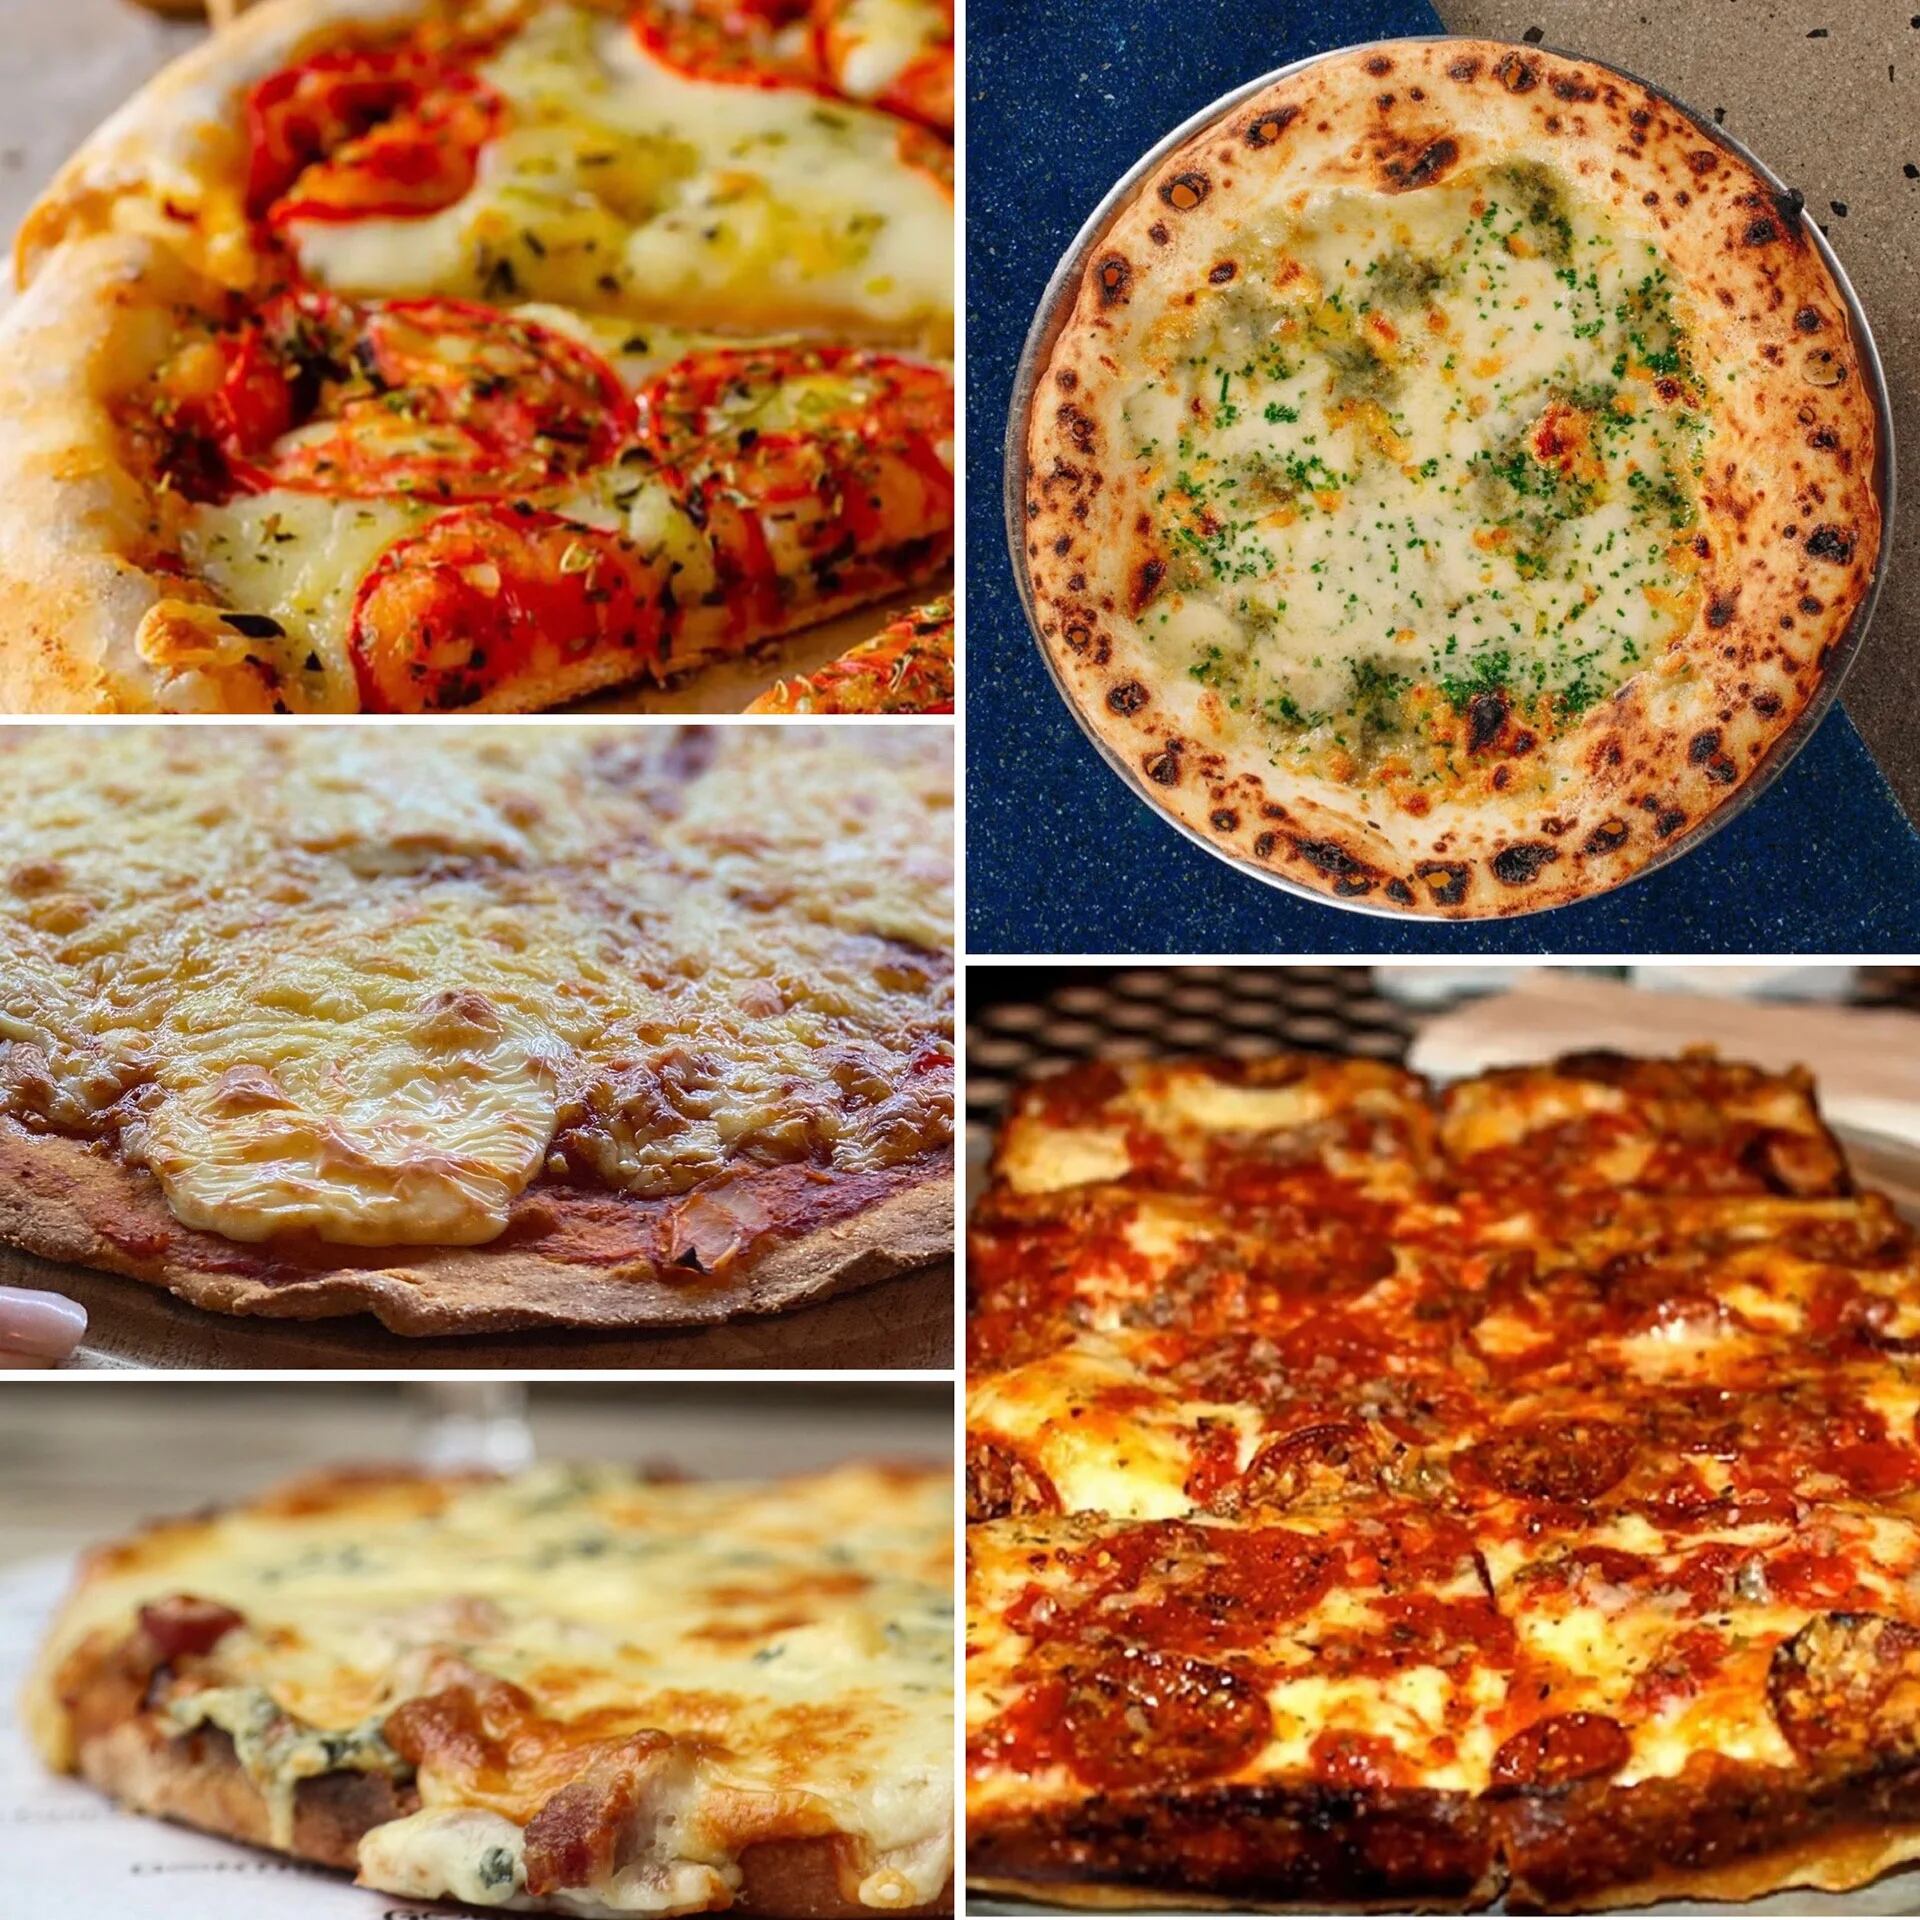 hoja bofetada Infidelidad 9 innovadoras recetas de pizza para deleitarse con amigos - Infobae